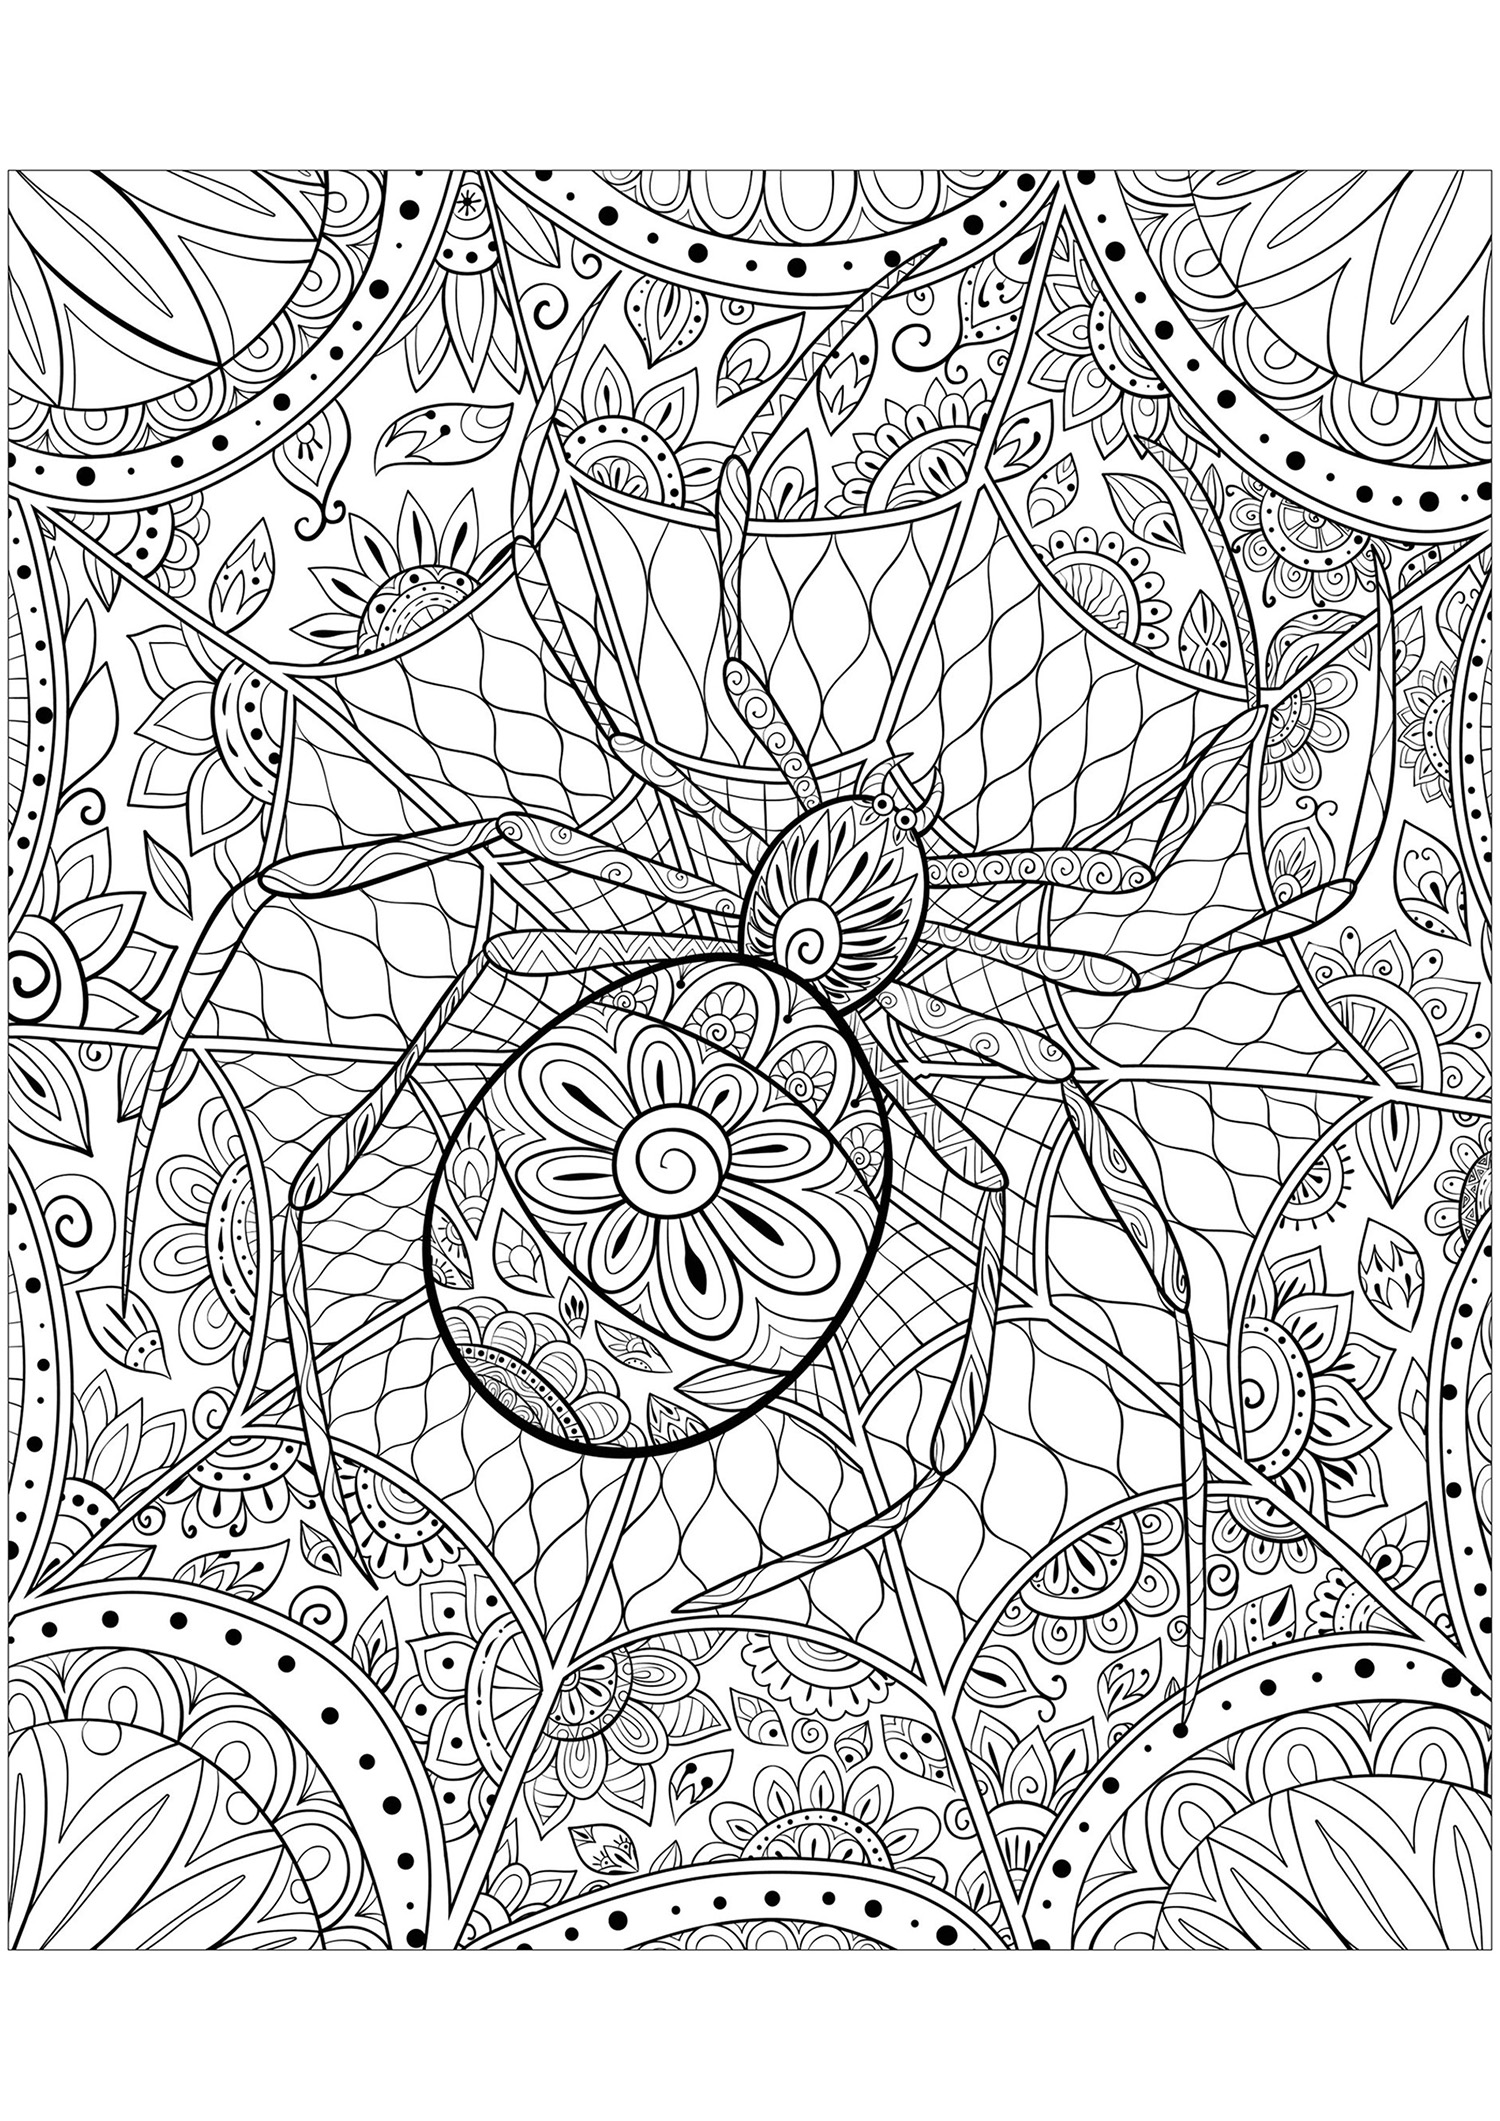 Colorazione complessa che rappresenta un ragno. Motivi variegati e complessi compongono il suo corpo ma anche la sua tela!, Fonte : 123rf   Artista : Nonuzza